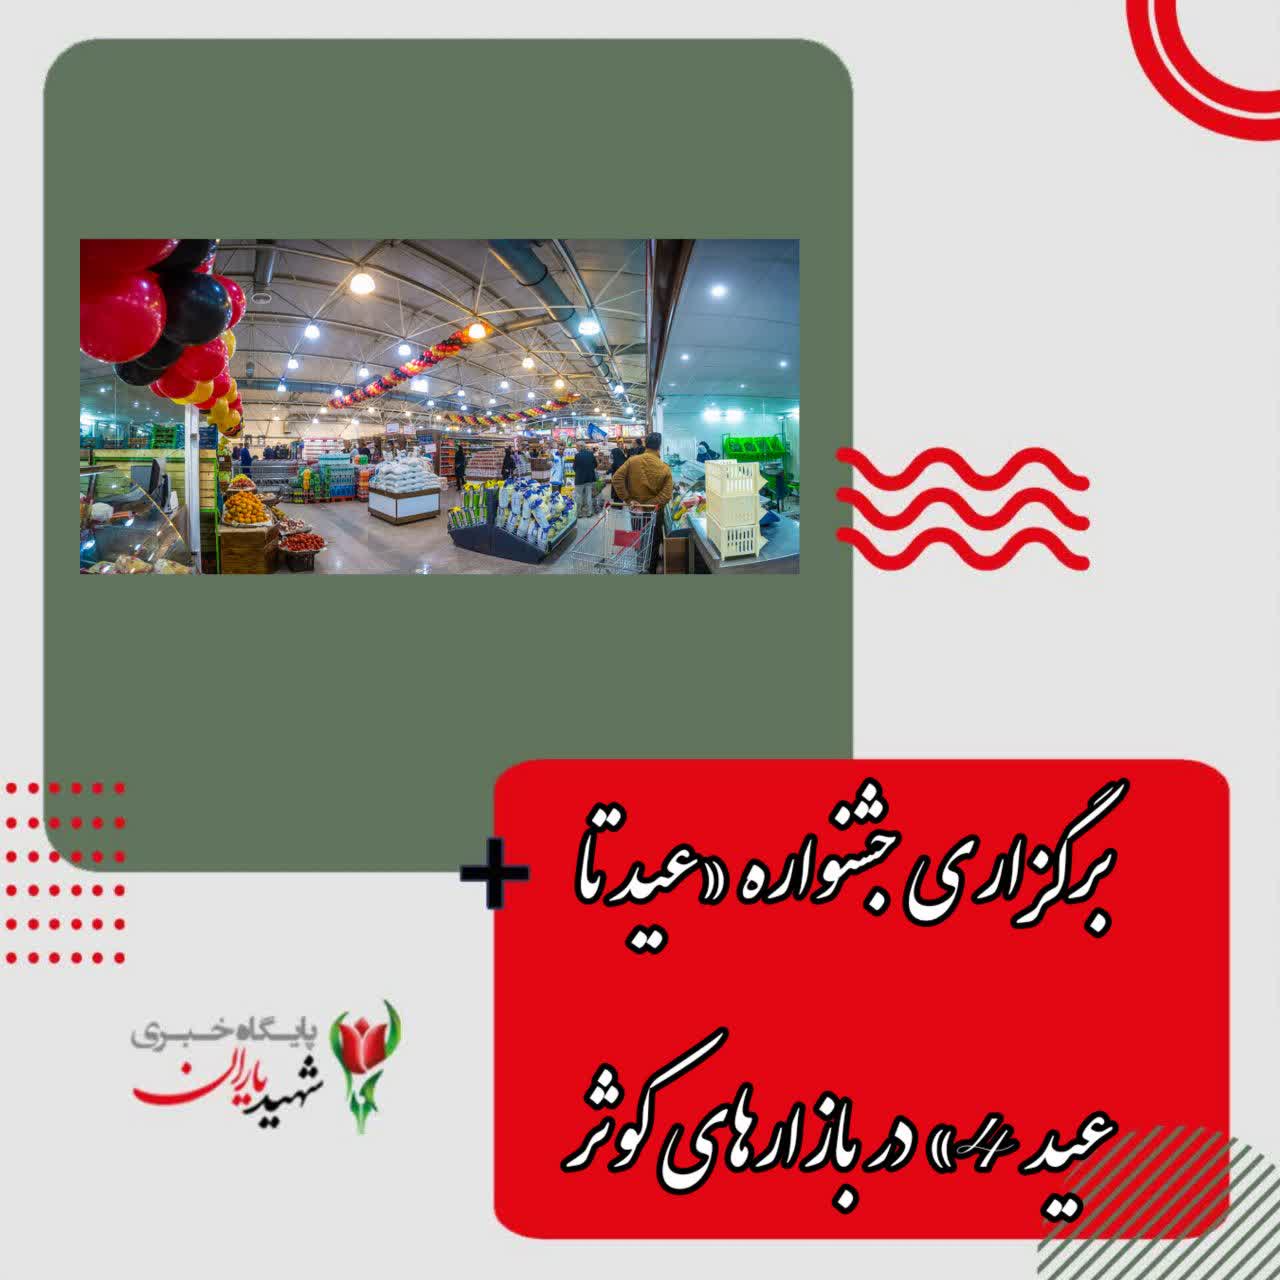 مدیر بازارهای روز کوثر شهرداری اصفهان خبر داد: